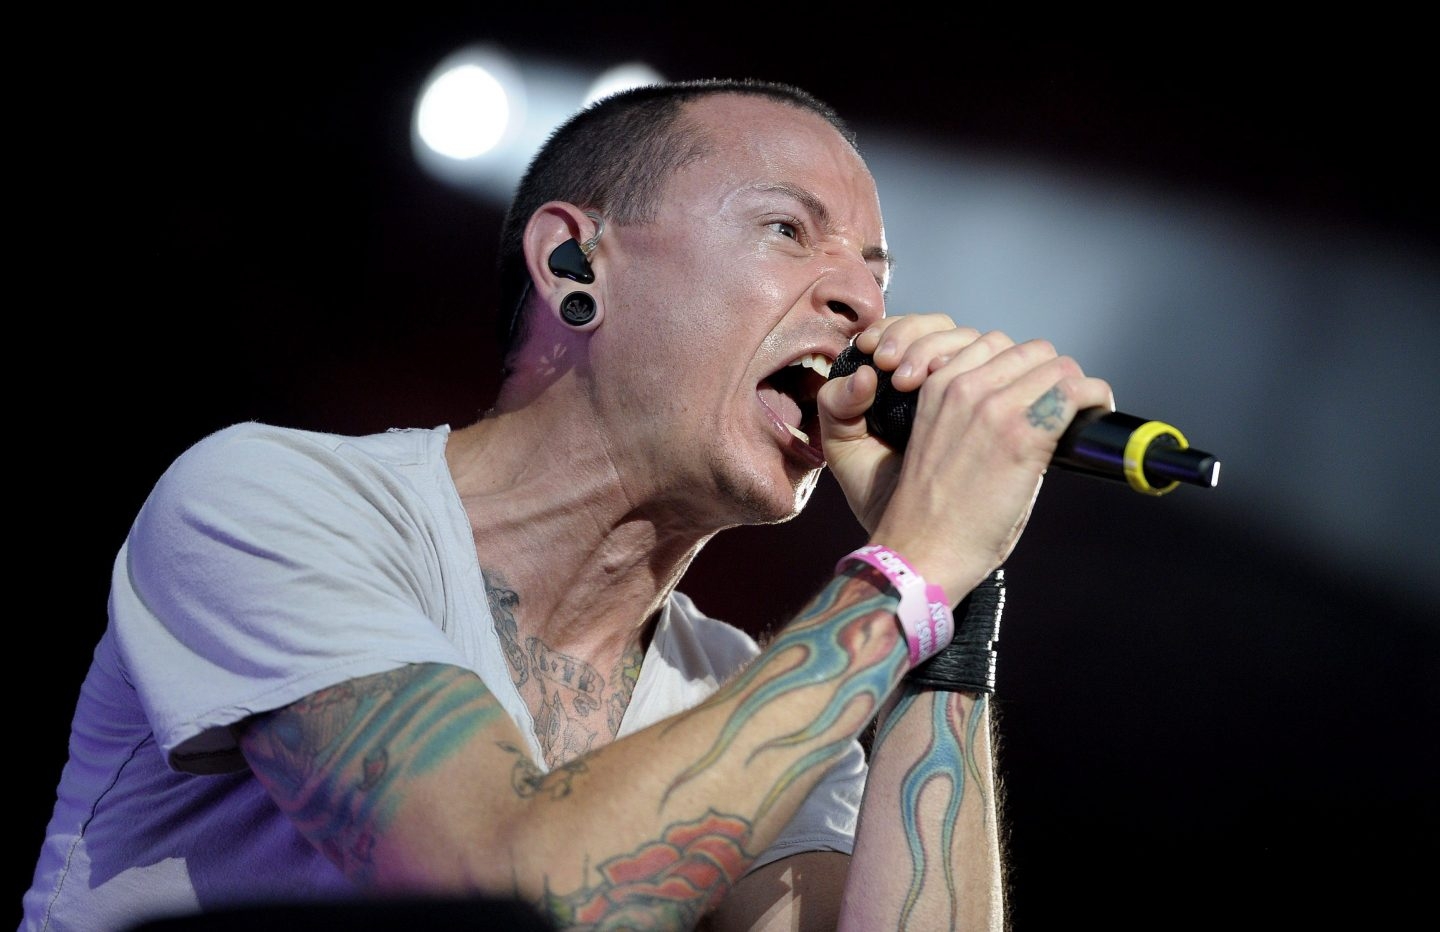 El cantante Chester Bennington, vocalista del grupo estadounidense de rock Linkin Park, durante un concierto.